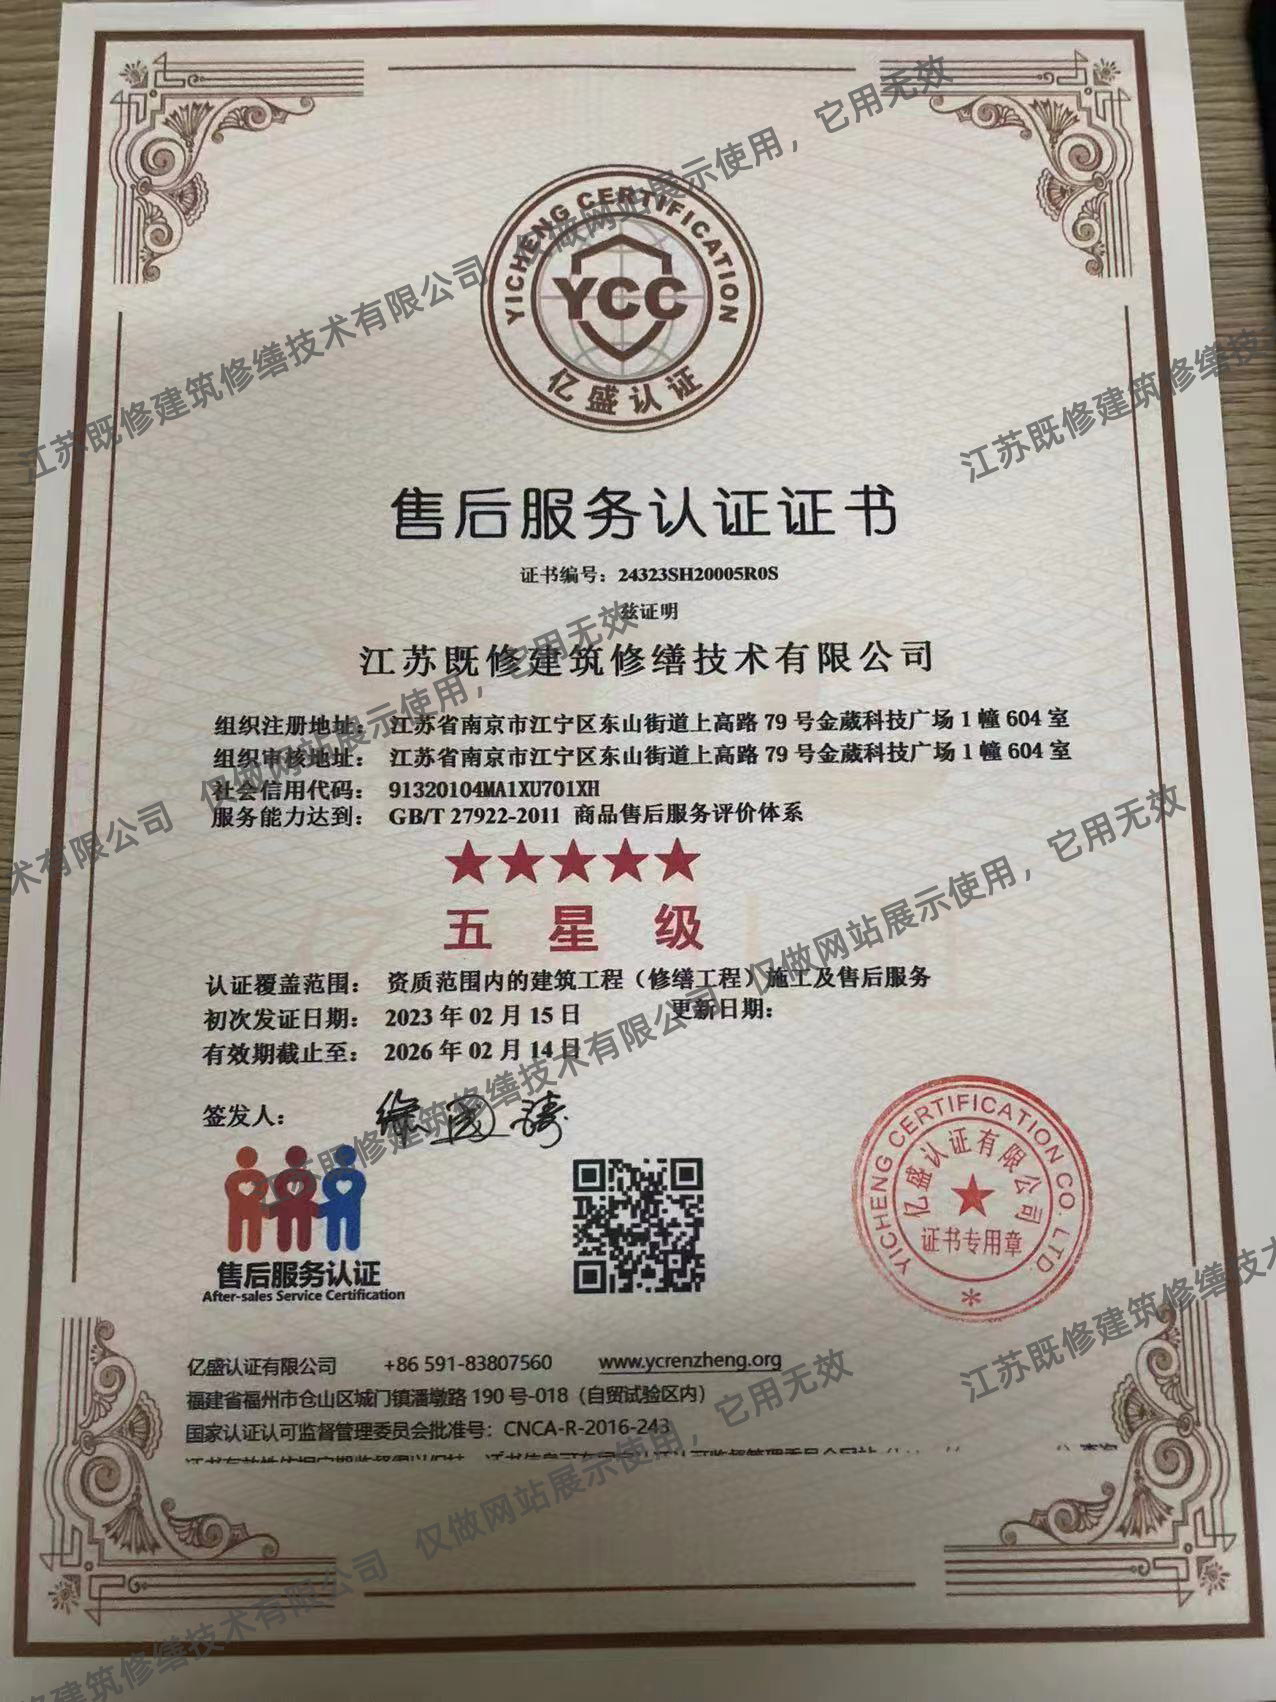 北京商品售后服务评价体系认证